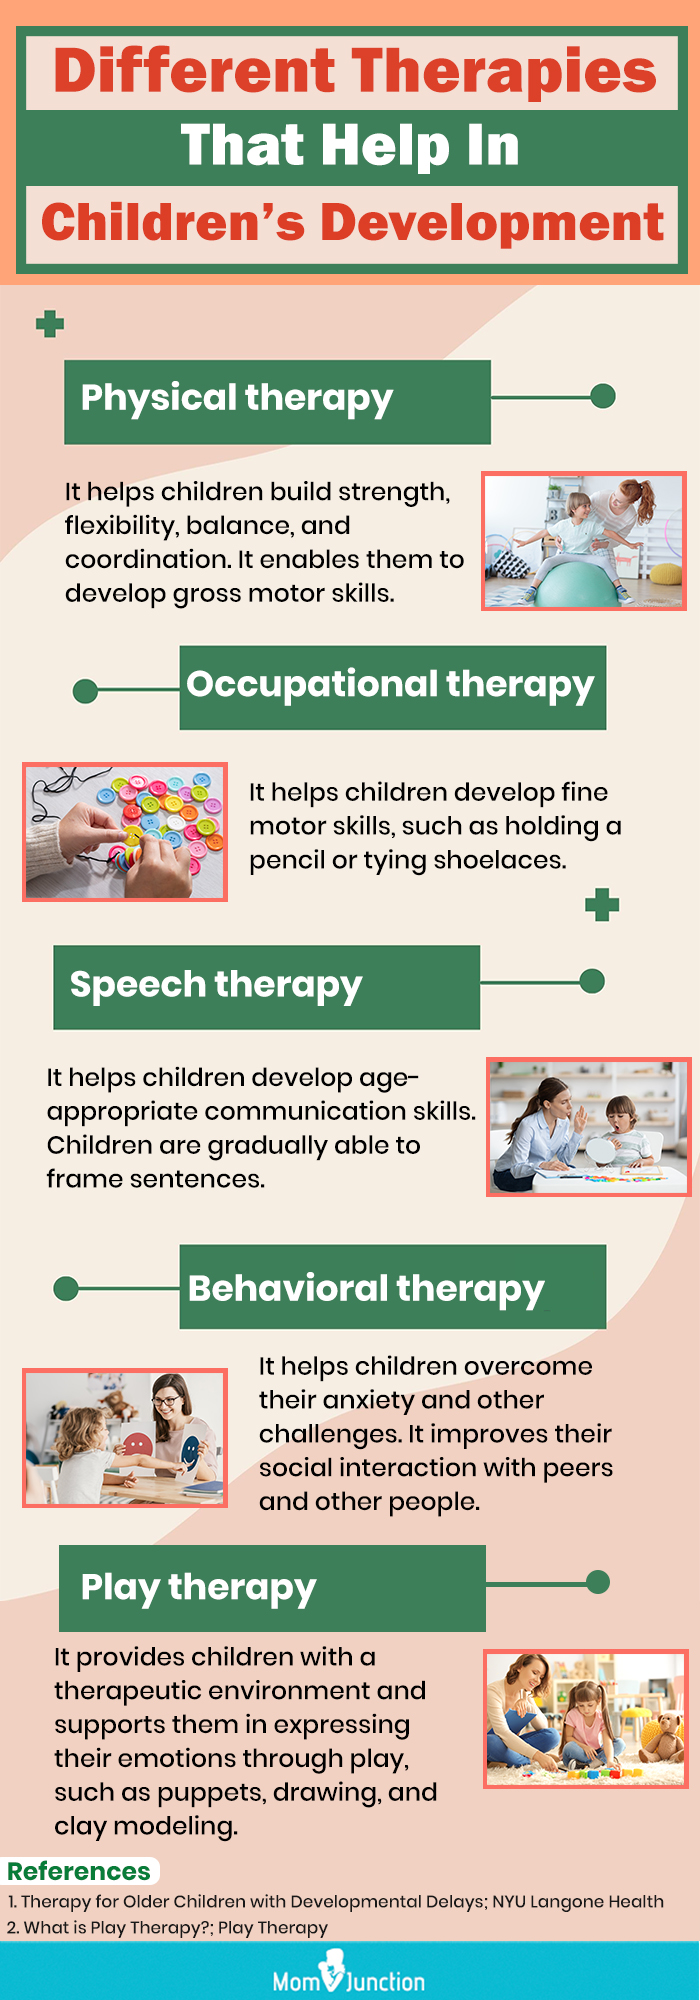 帮助儿童发展的不同疗法(信息图)